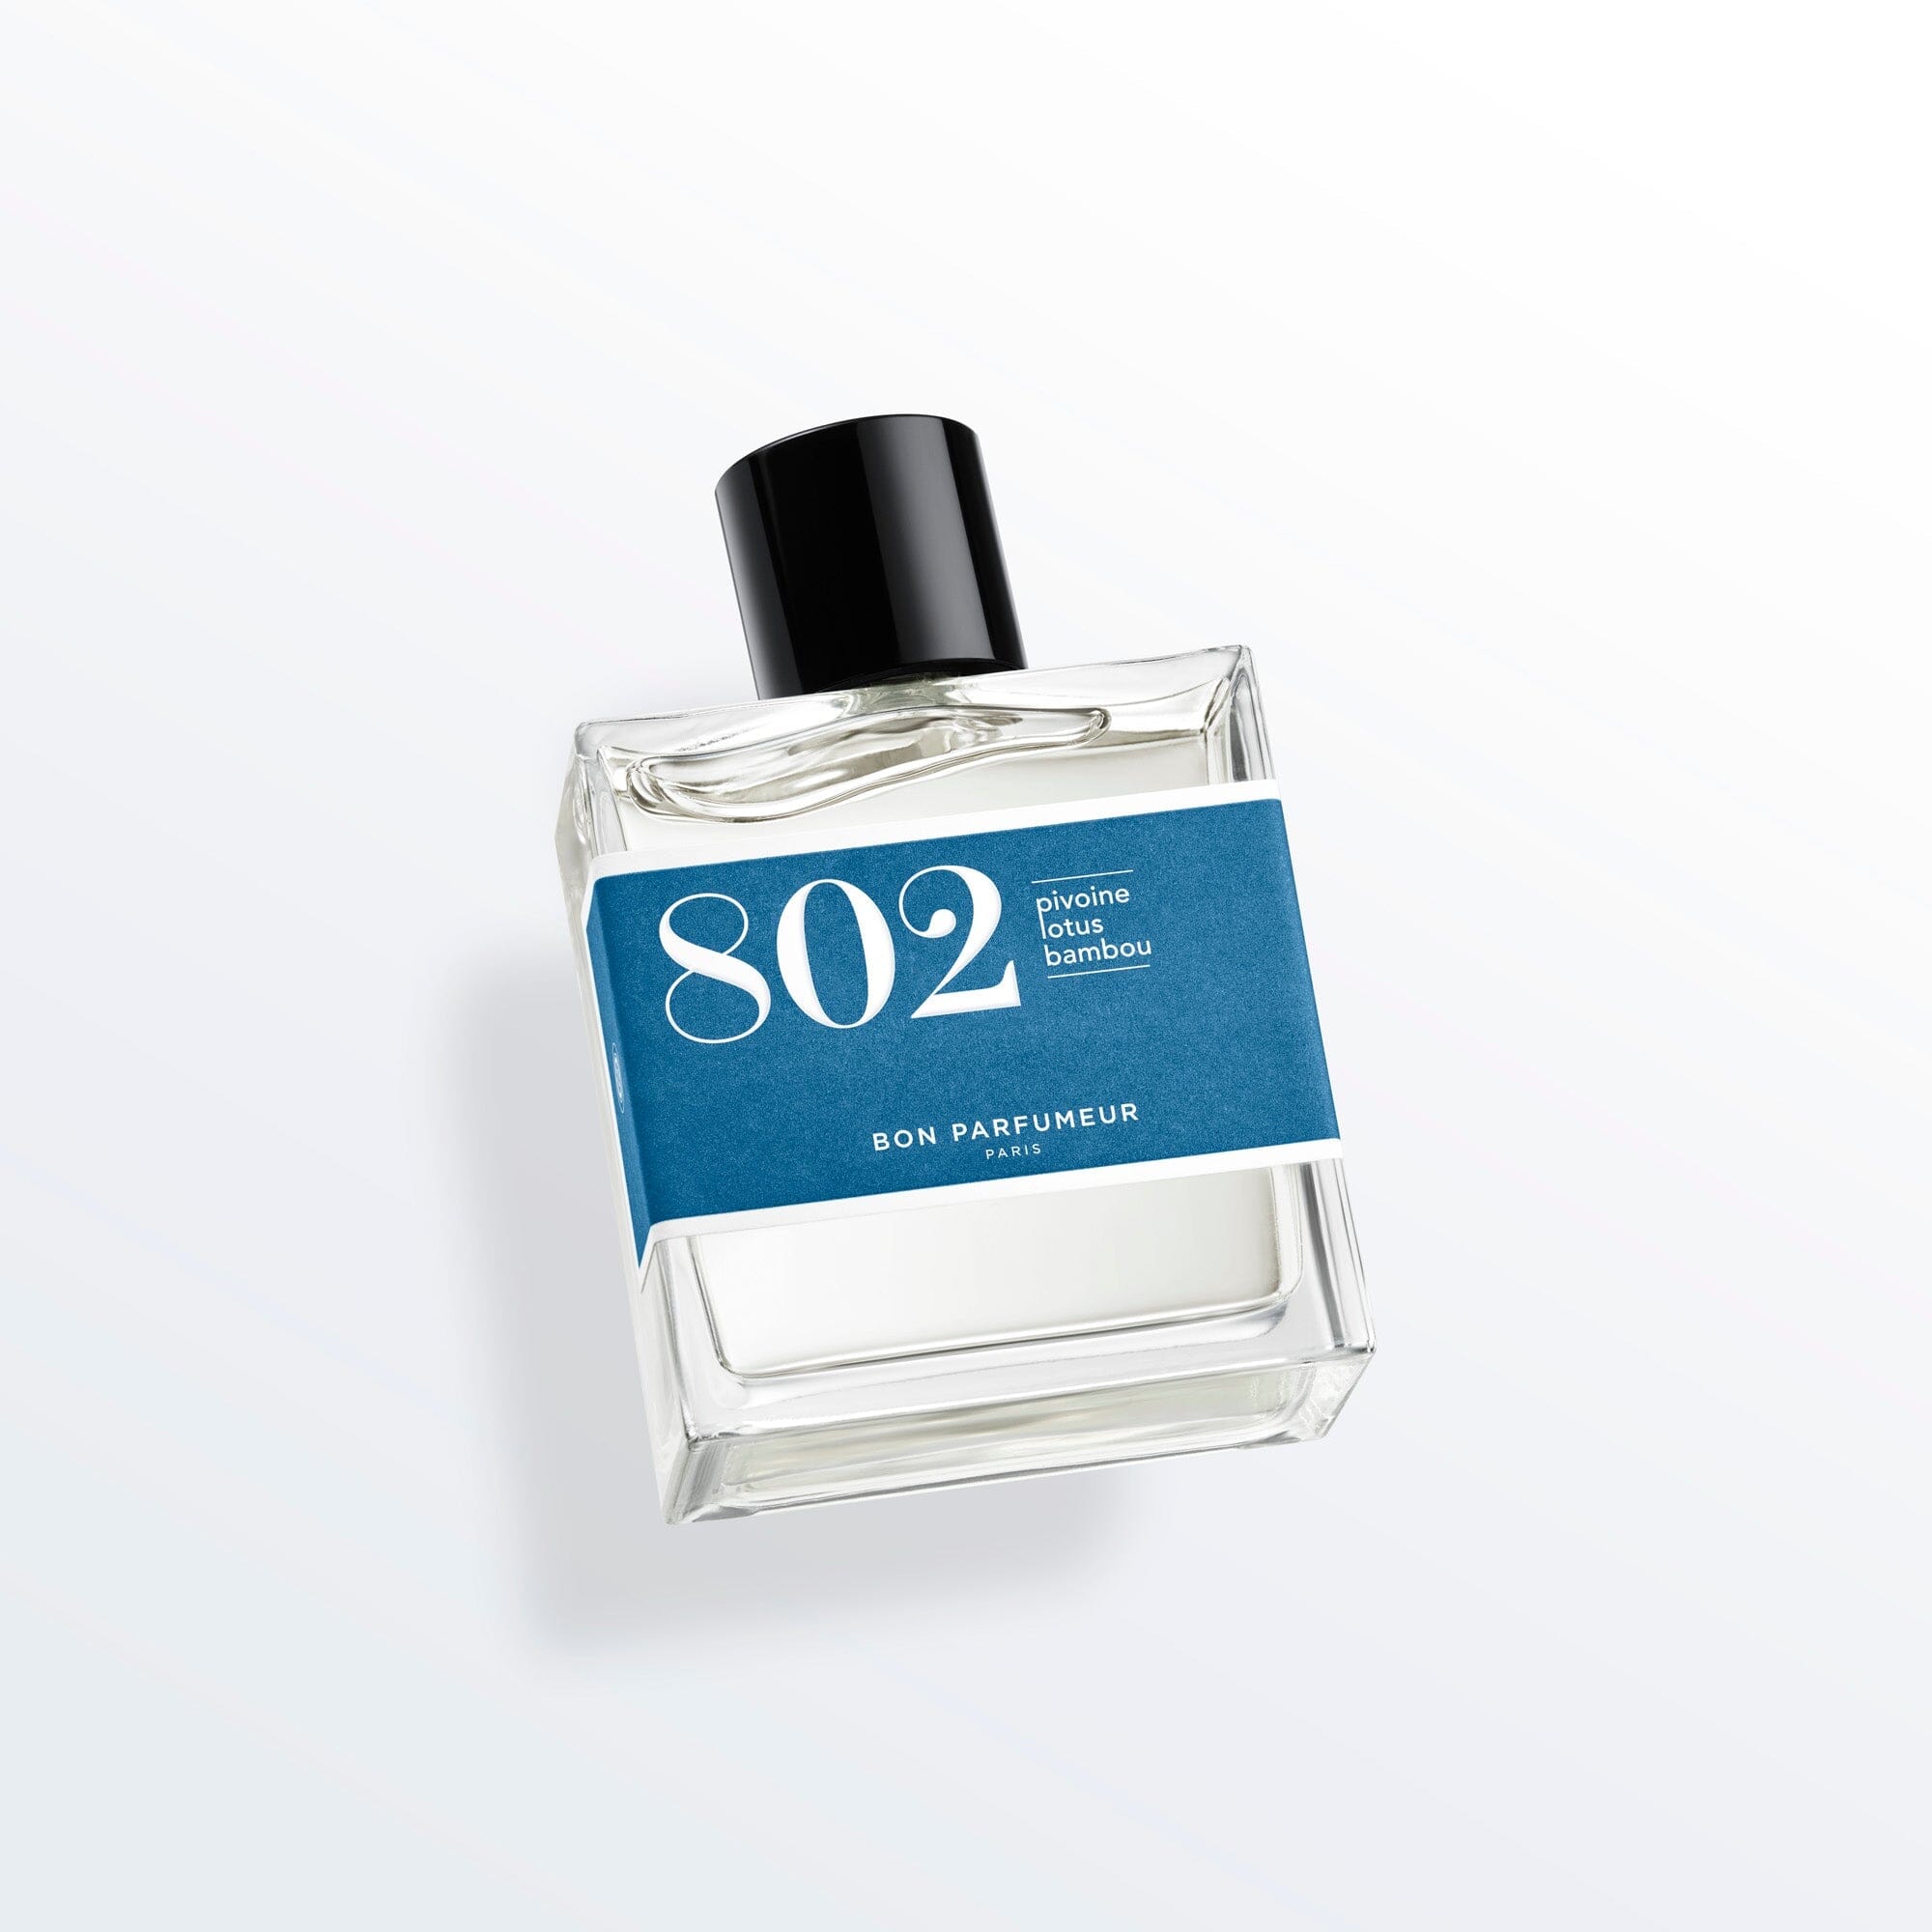 La Maison Des Essences - Eau de Parfum for women no. 06 - 100ml